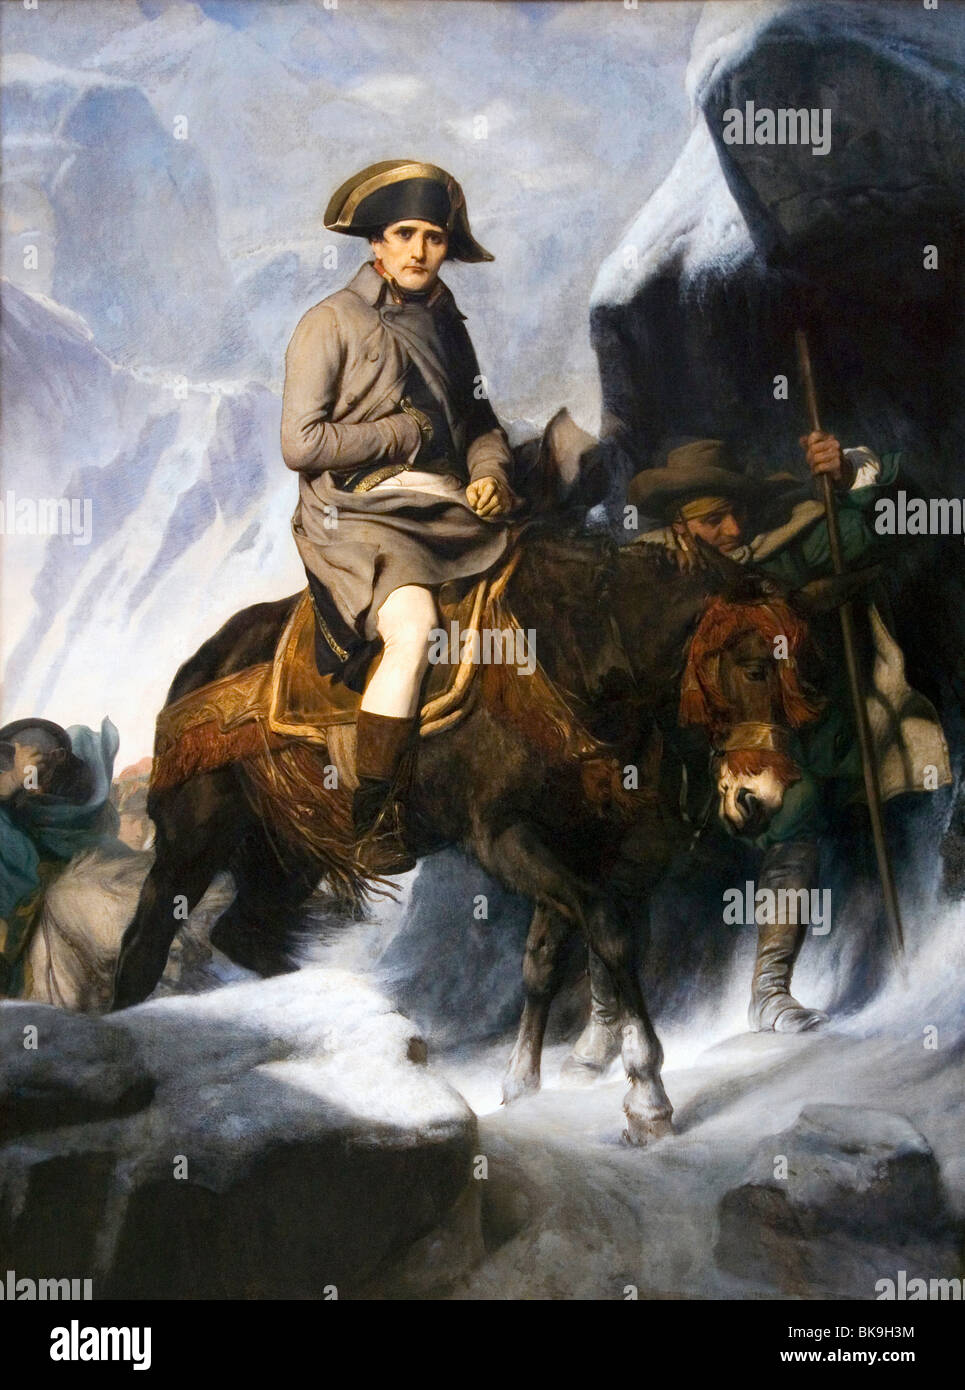 Napoleon überquert die Alpen, von Paul Delaroche, Öl auf Leinwand, 1850, Frankreich, Paris, Musée du Louvre, 1797-1856 Stockfoto